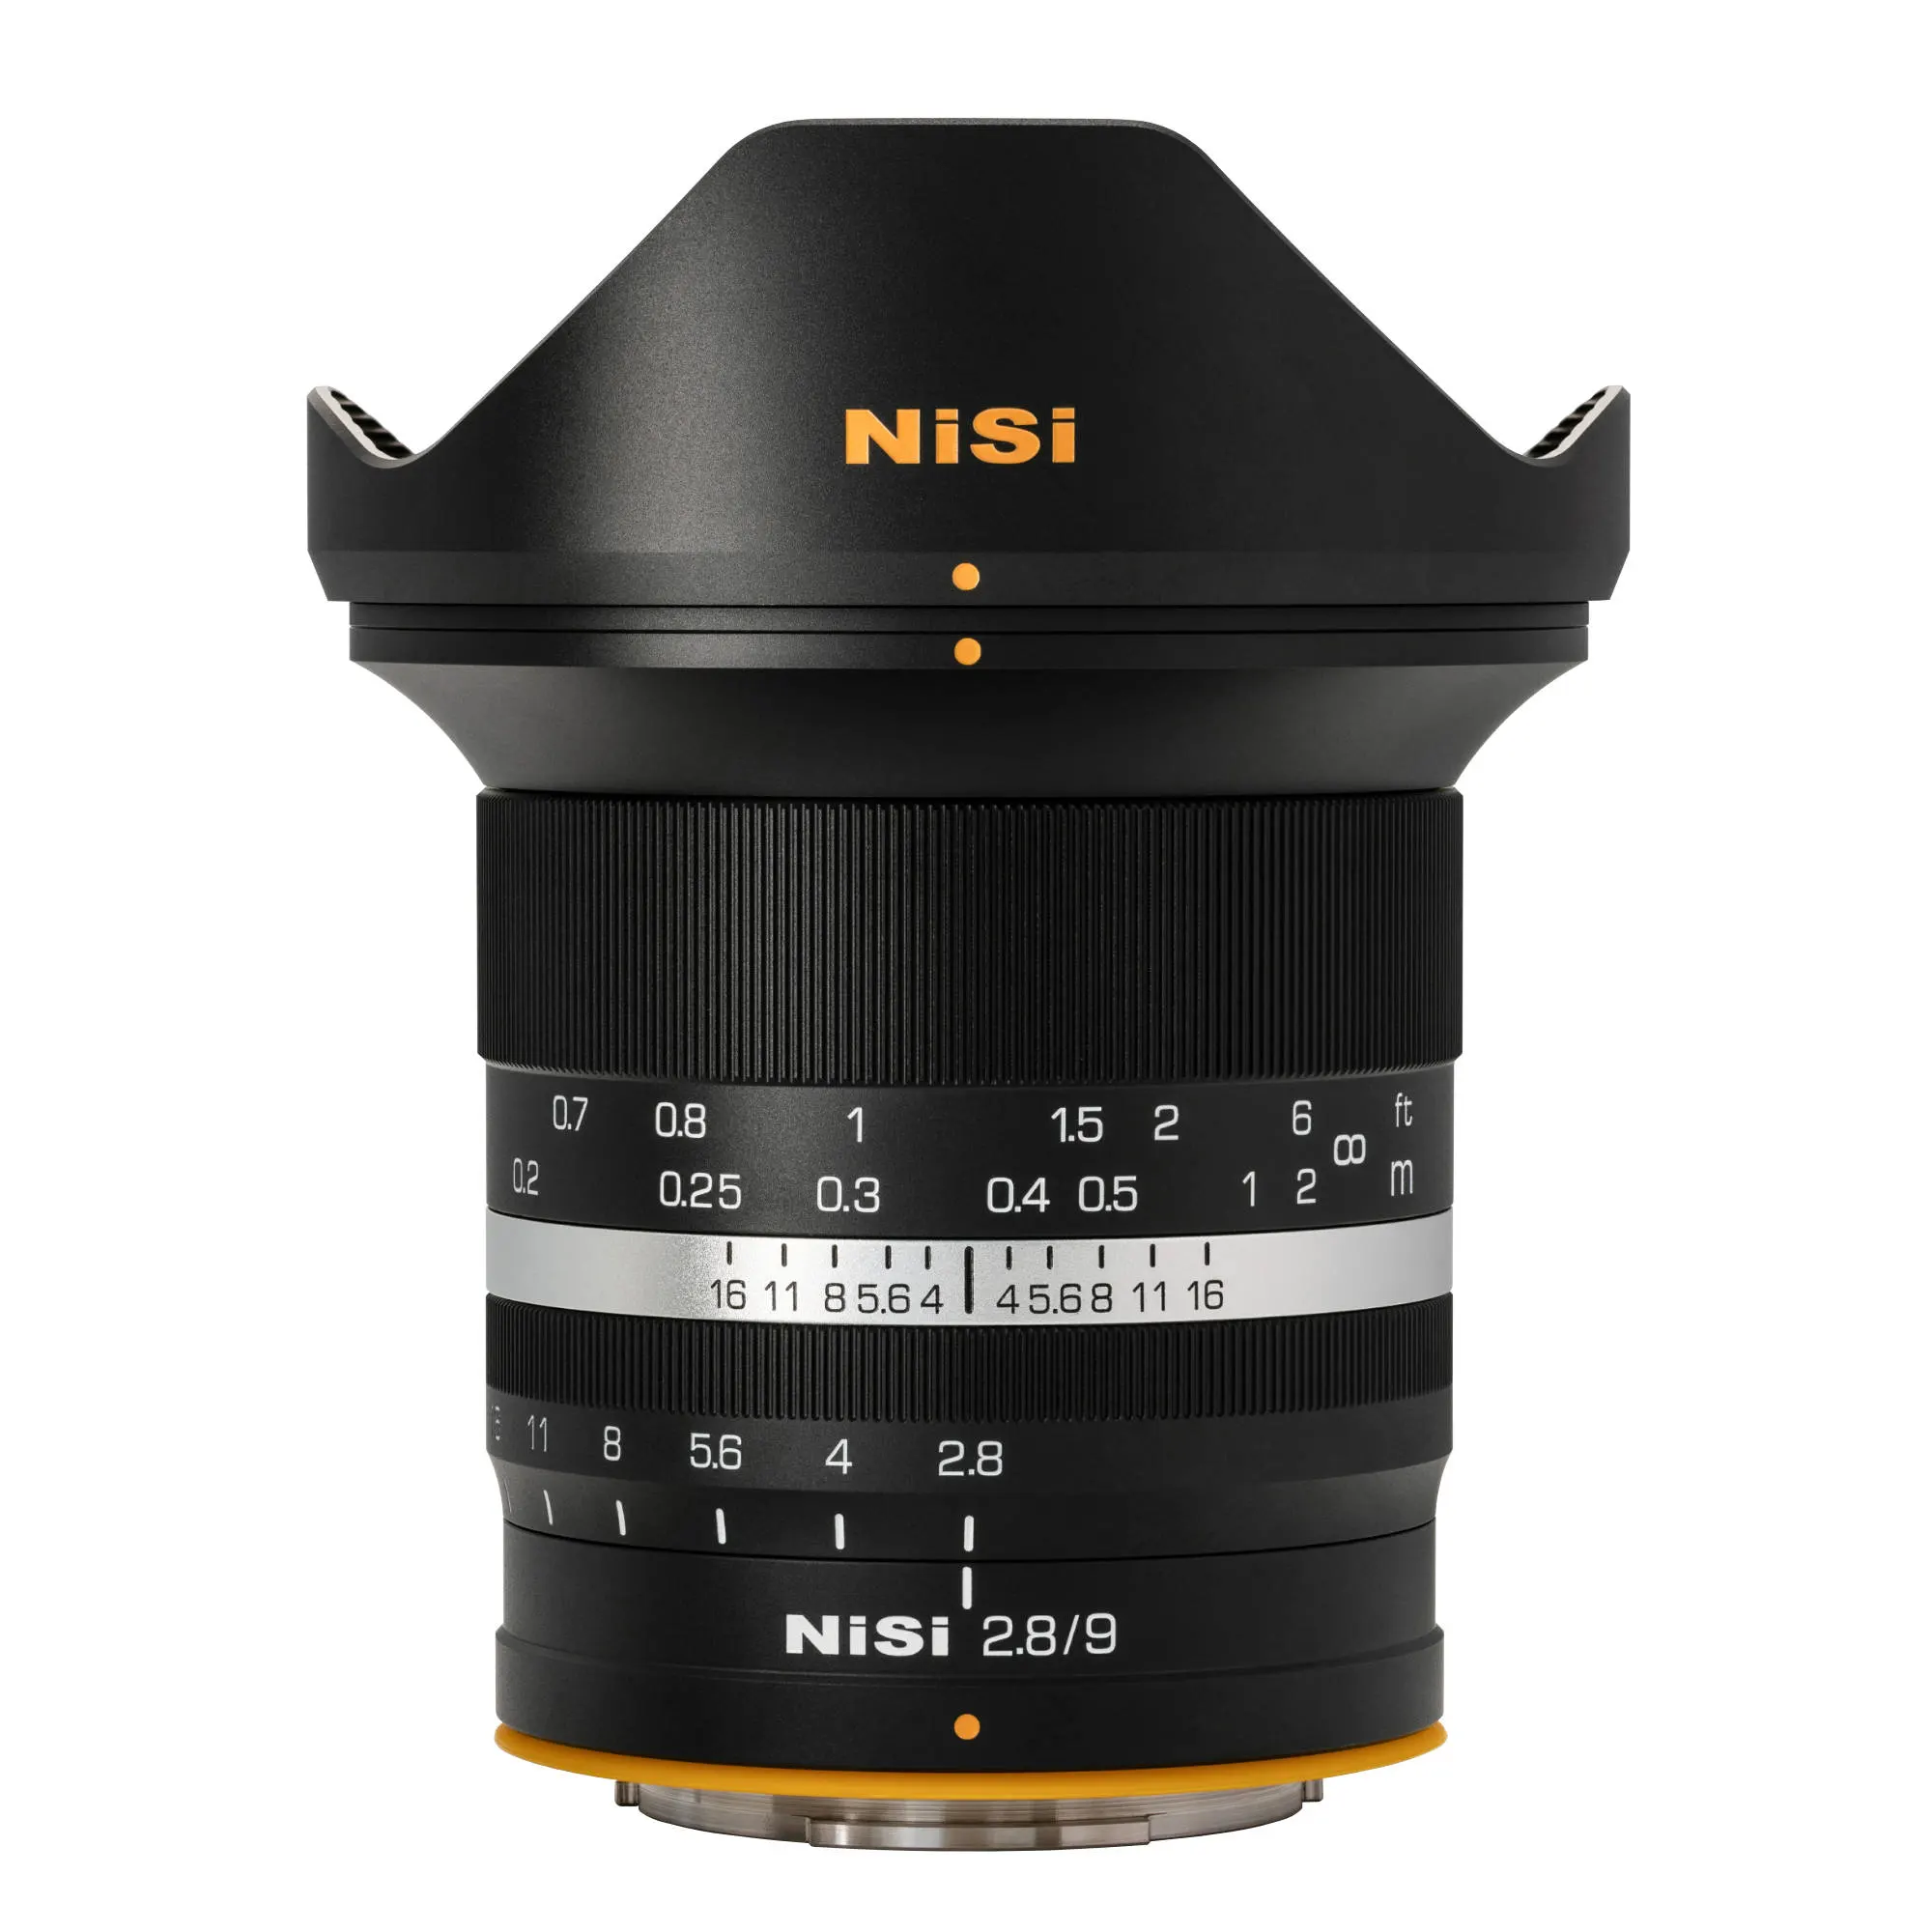 NiSi 9mm Lens